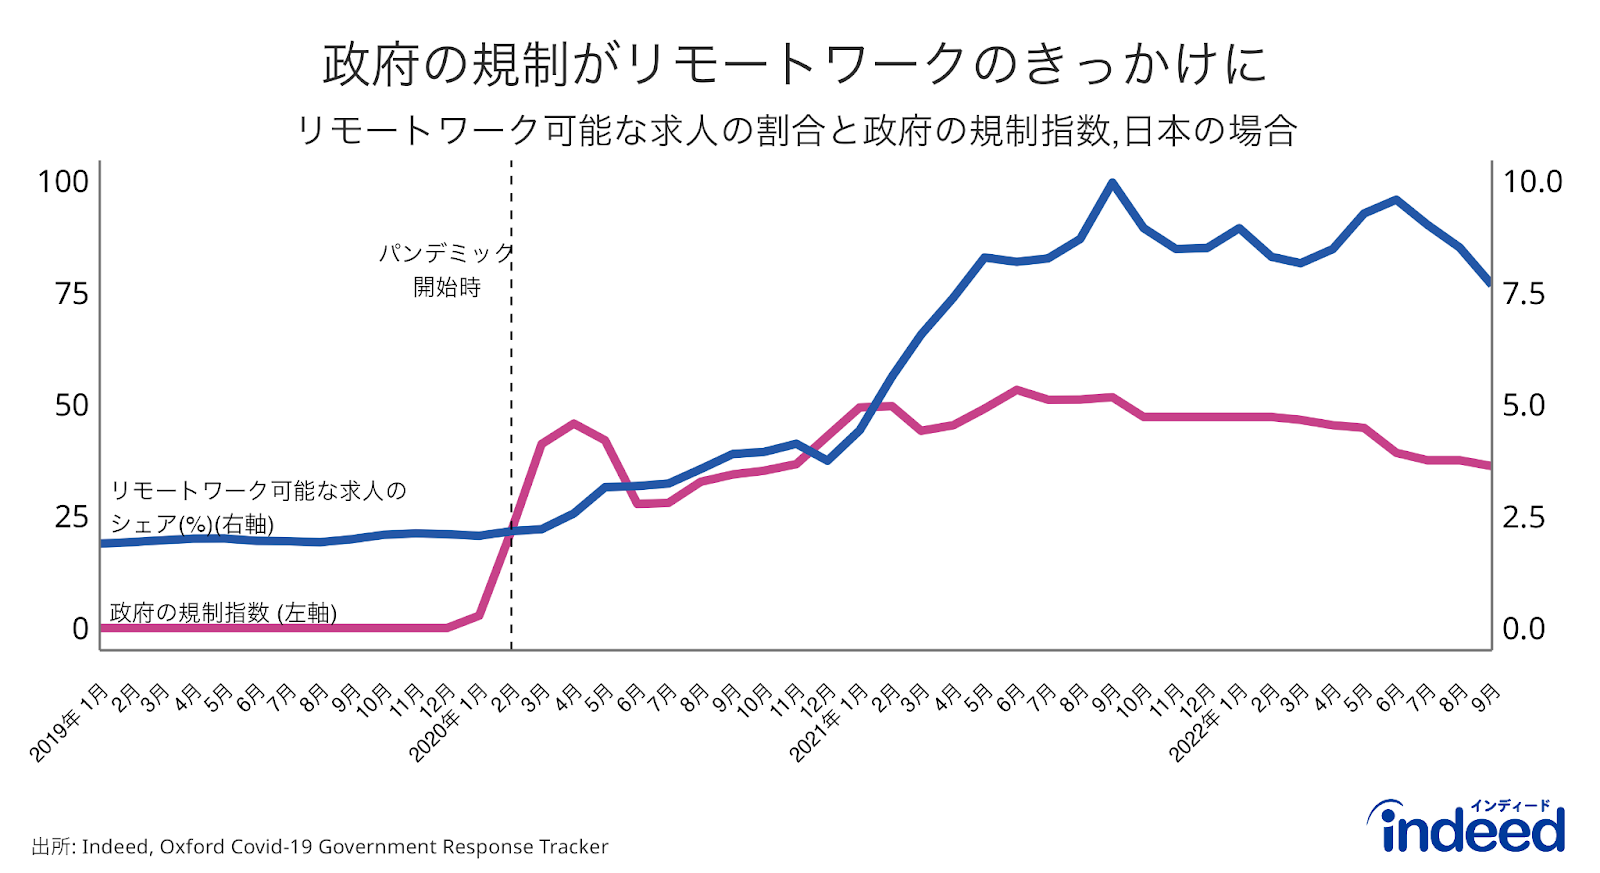 この折れ線グラフは、日本の2019年1月から2022年9月までの、求人全体に占めるリモートワーク可能な求人の割合と、移動規制の程度を示したもの。求人情報のデータはIndeed、移動規制指数のデータはOxford Covid-19 Government Response Trackerから取得。